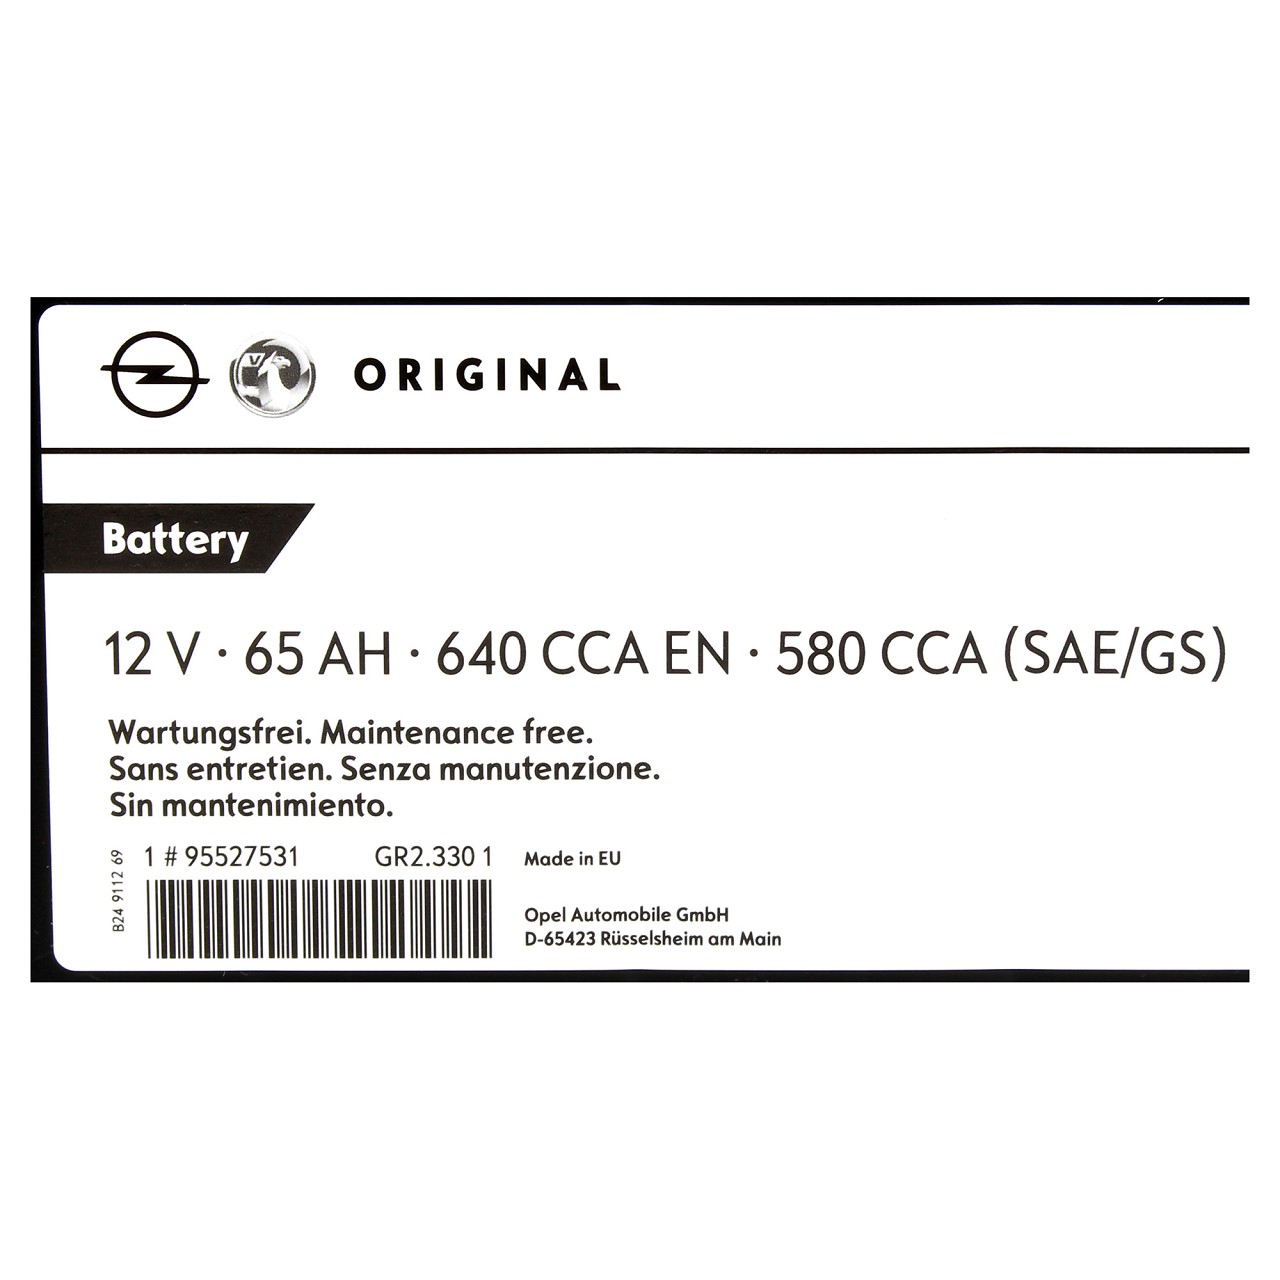 ORIGINAL GM Opel Starterbatterie 12V 65Ah 580 CCA EN 95519151 B-WARE